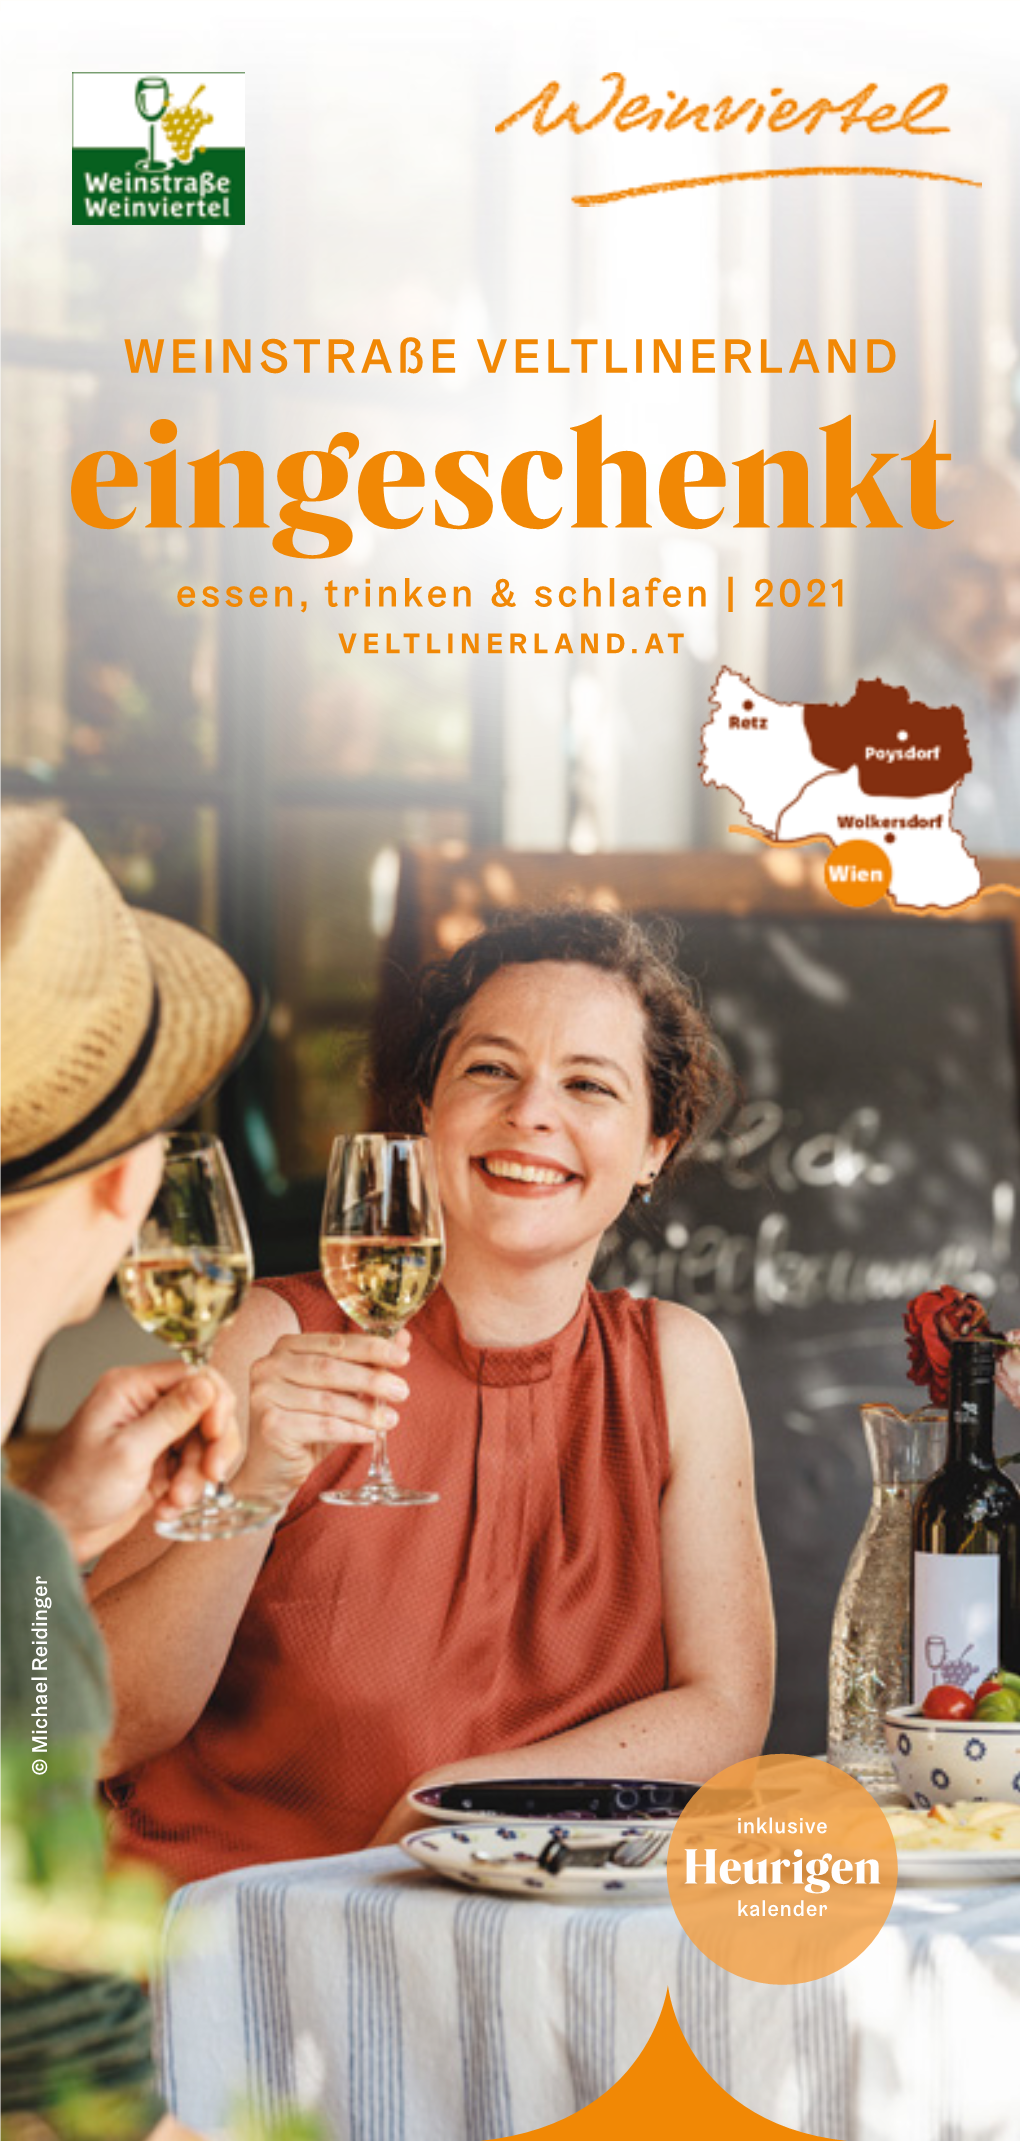 Eingeschenkt Weinstraße VELTLINERLAND Essen, Trinken &Schlafen |2021 VELTLINERLAND.AT Heurigen Inklusive Kalender